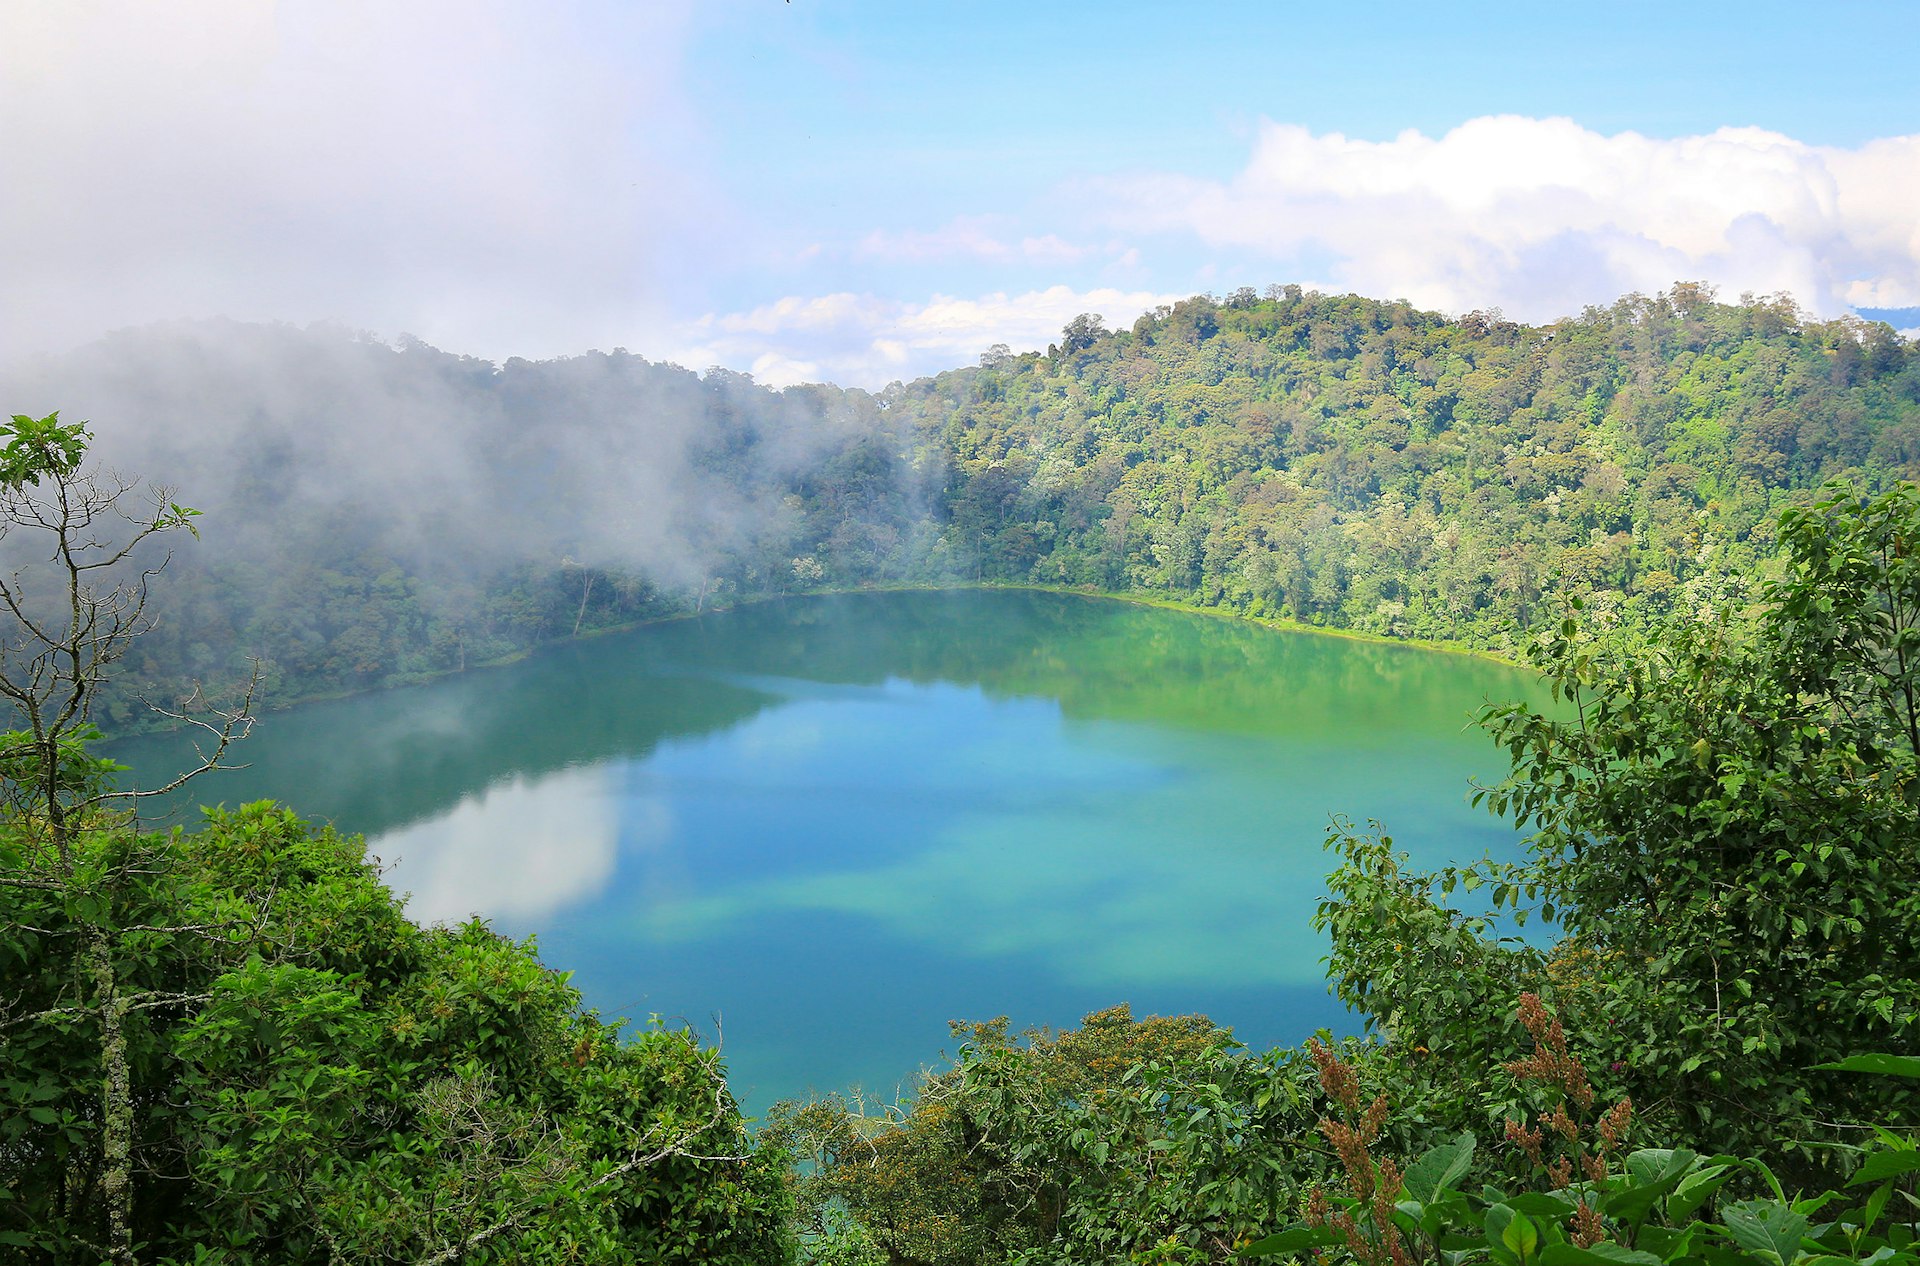 Mist swirls around the crater lake of Laguna Chicabal, Guatemala